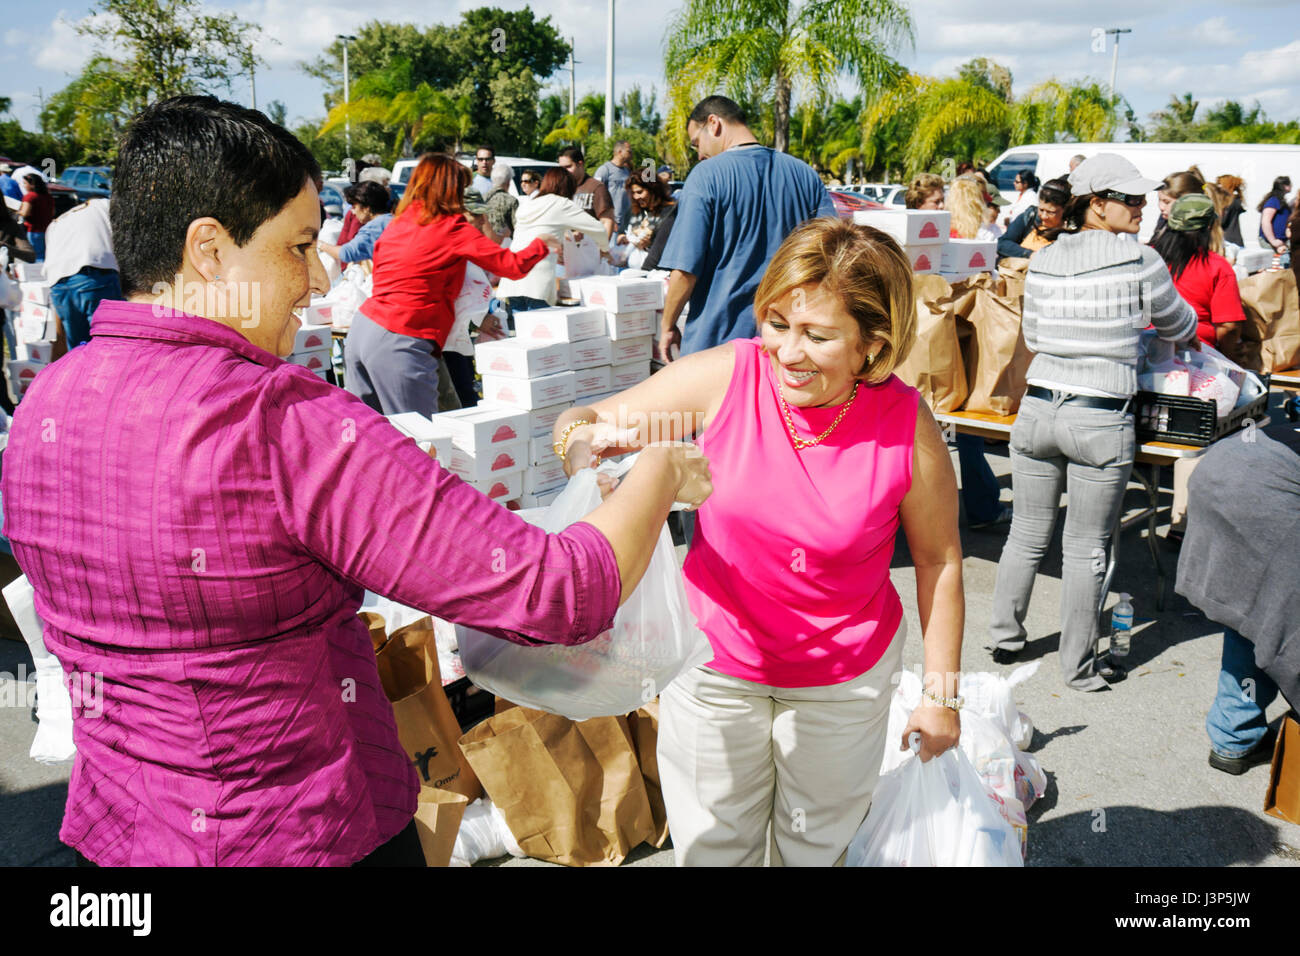 Miami Florida,Alpha Omega Church,Christian,religion,Thanksgiving turquie donner loin,gratuit,nourriture,dans le besoin,bénévoles bénévoles service communautaire bénévolat Banque D'Images